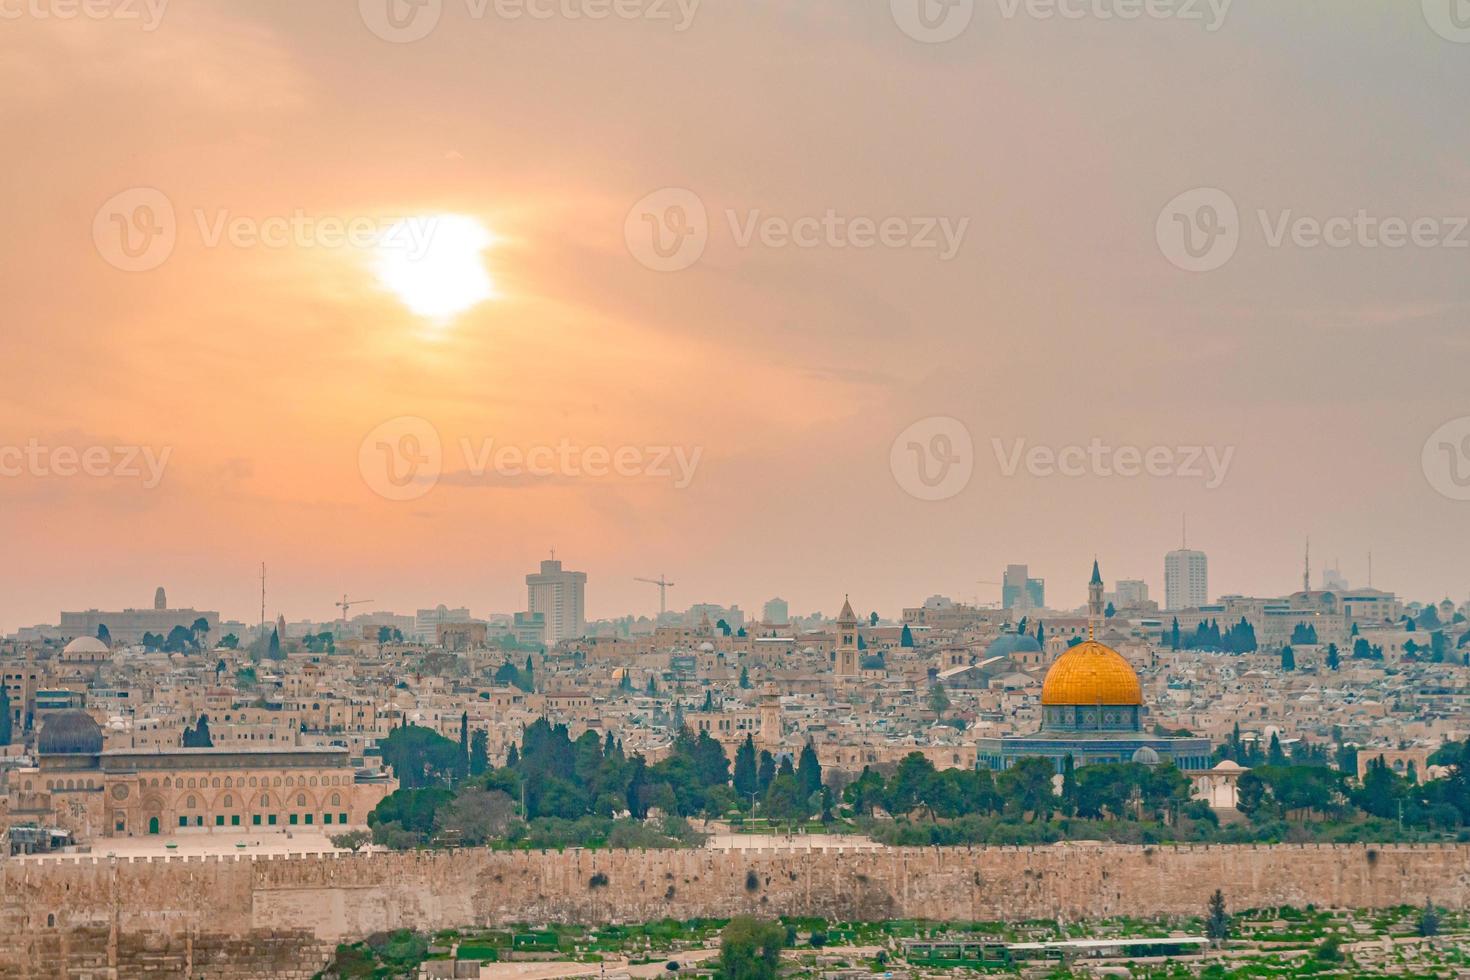 vista panorâmica da cidade velha de jerusalém e do monte do templo durante um pôr do sol colorido dramático foto